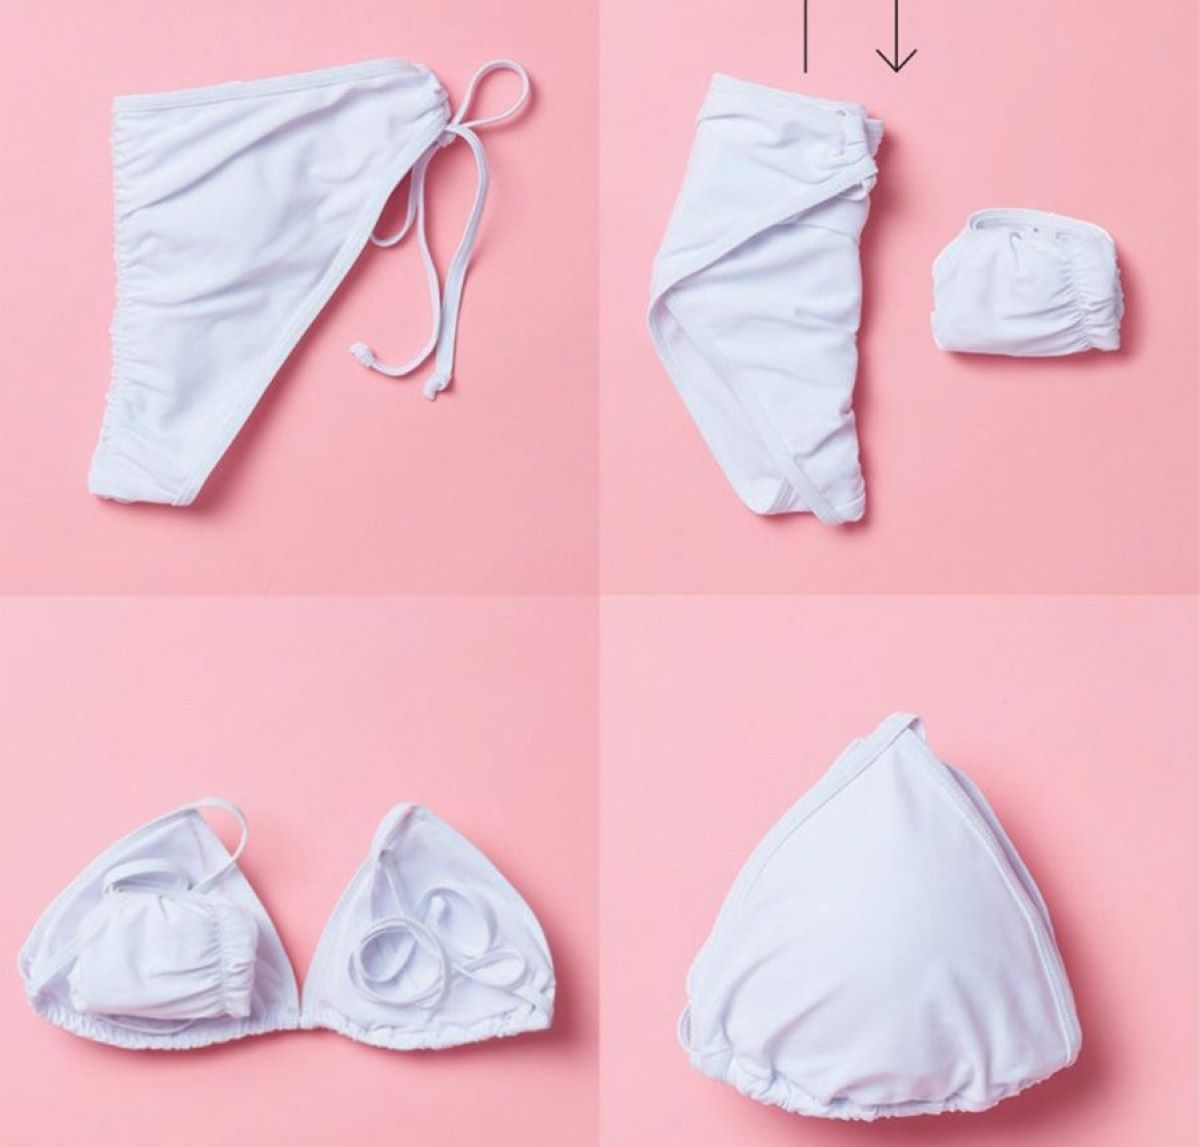 How To Fold A Bikini